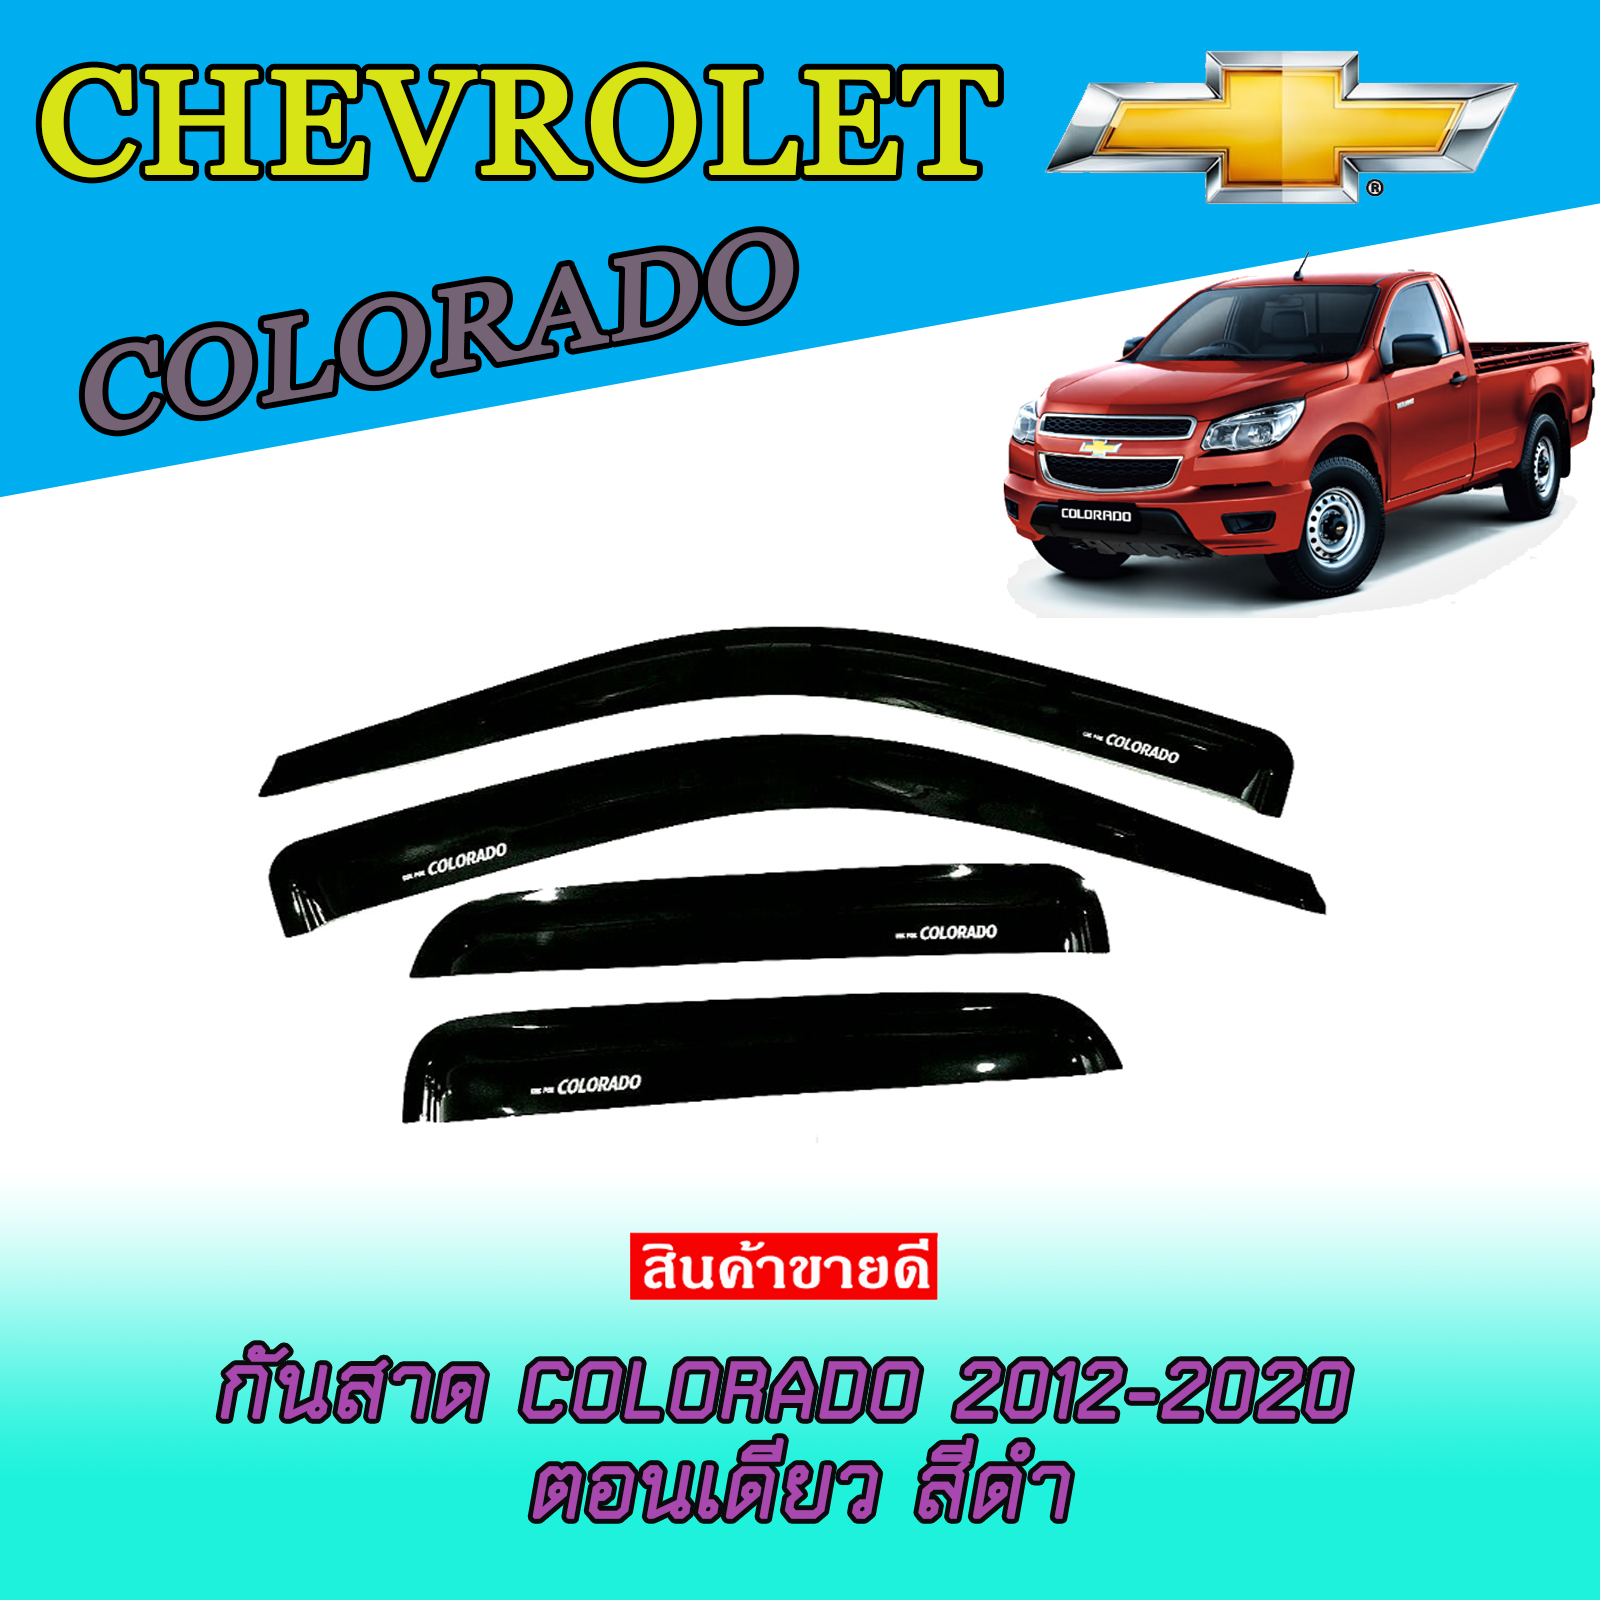 กันสาดรถยนต์สีดำเข้ม เชฟโรเลต โคโลราโด Chevrolet Colorado ตอนเดียว 2 ประตู ปี 2012 2013 2014 2015 2016 2017 2018 2019